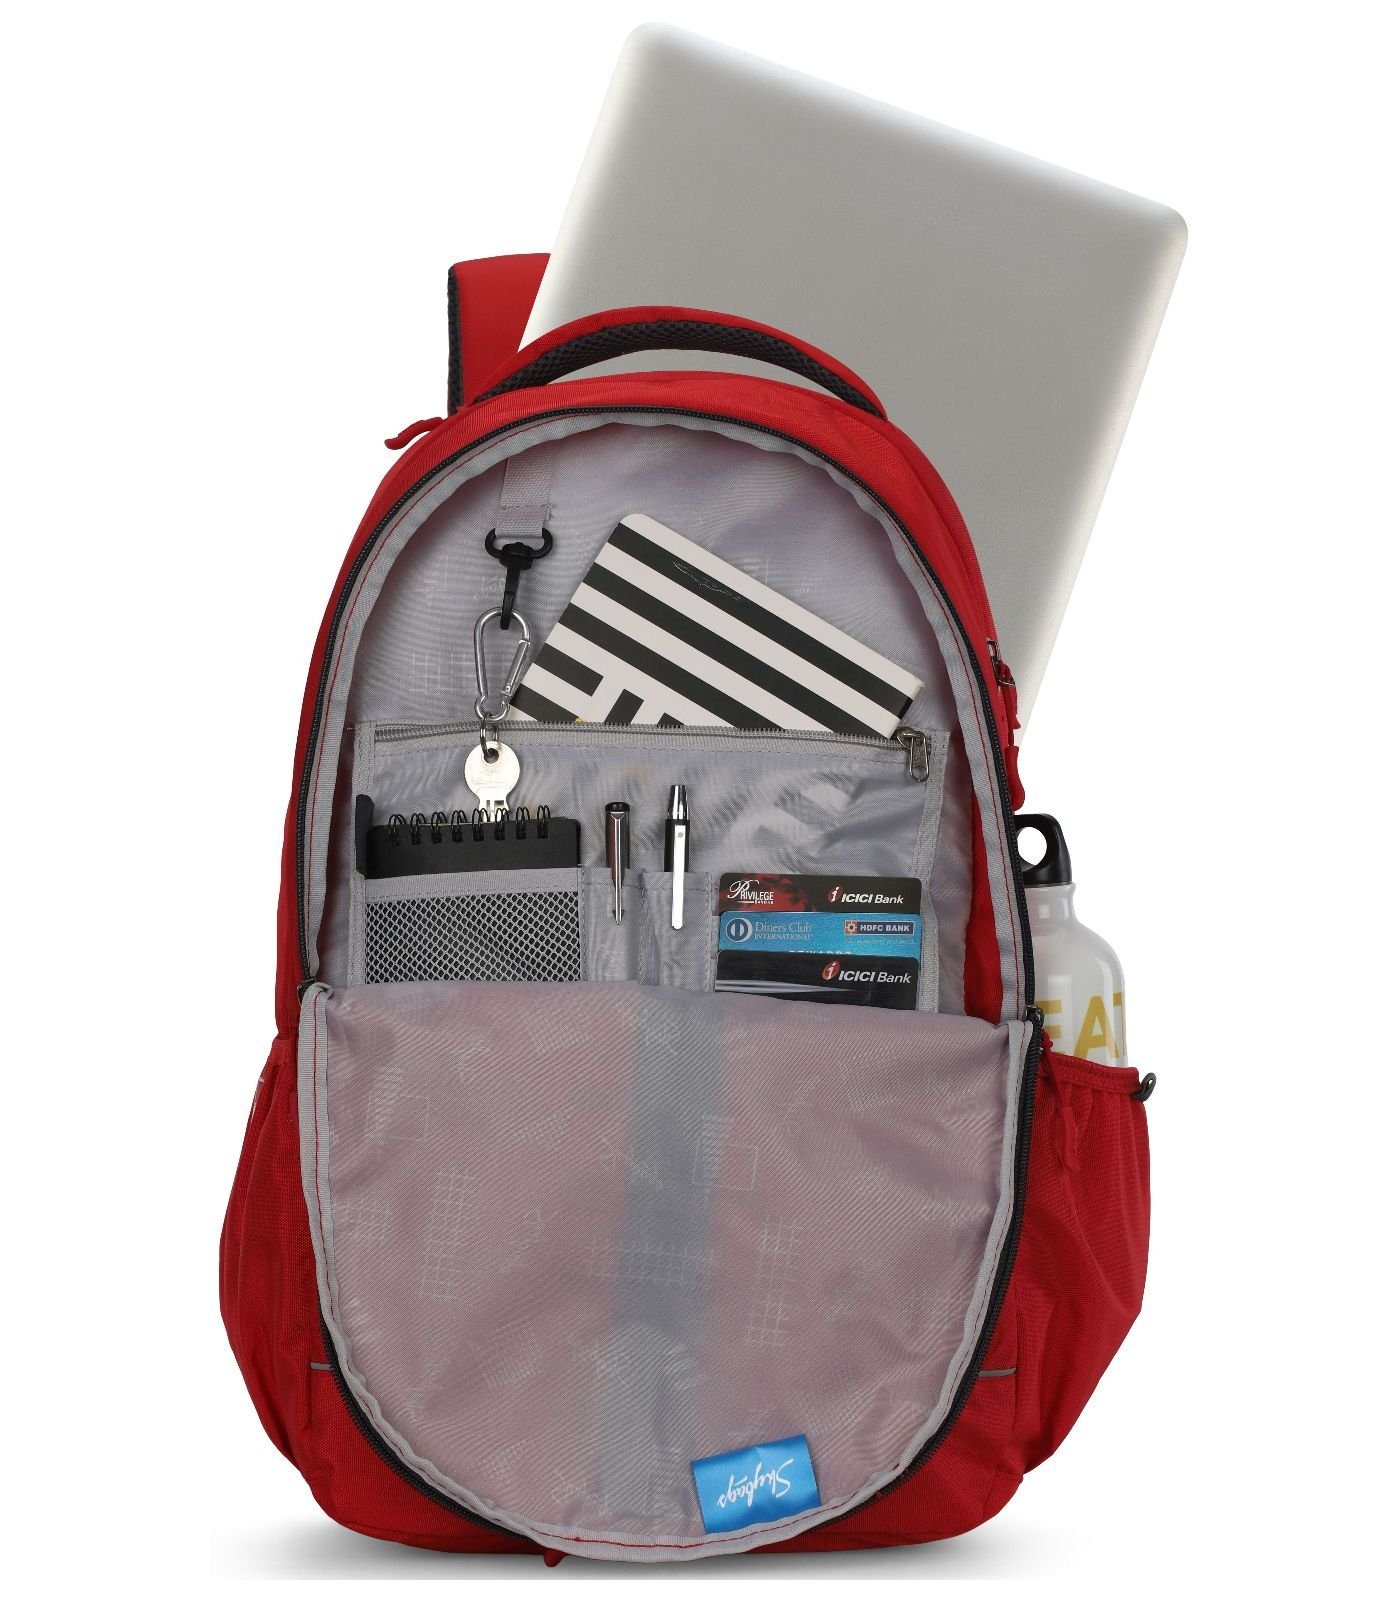 Textil Skybags Rucksack Taschen